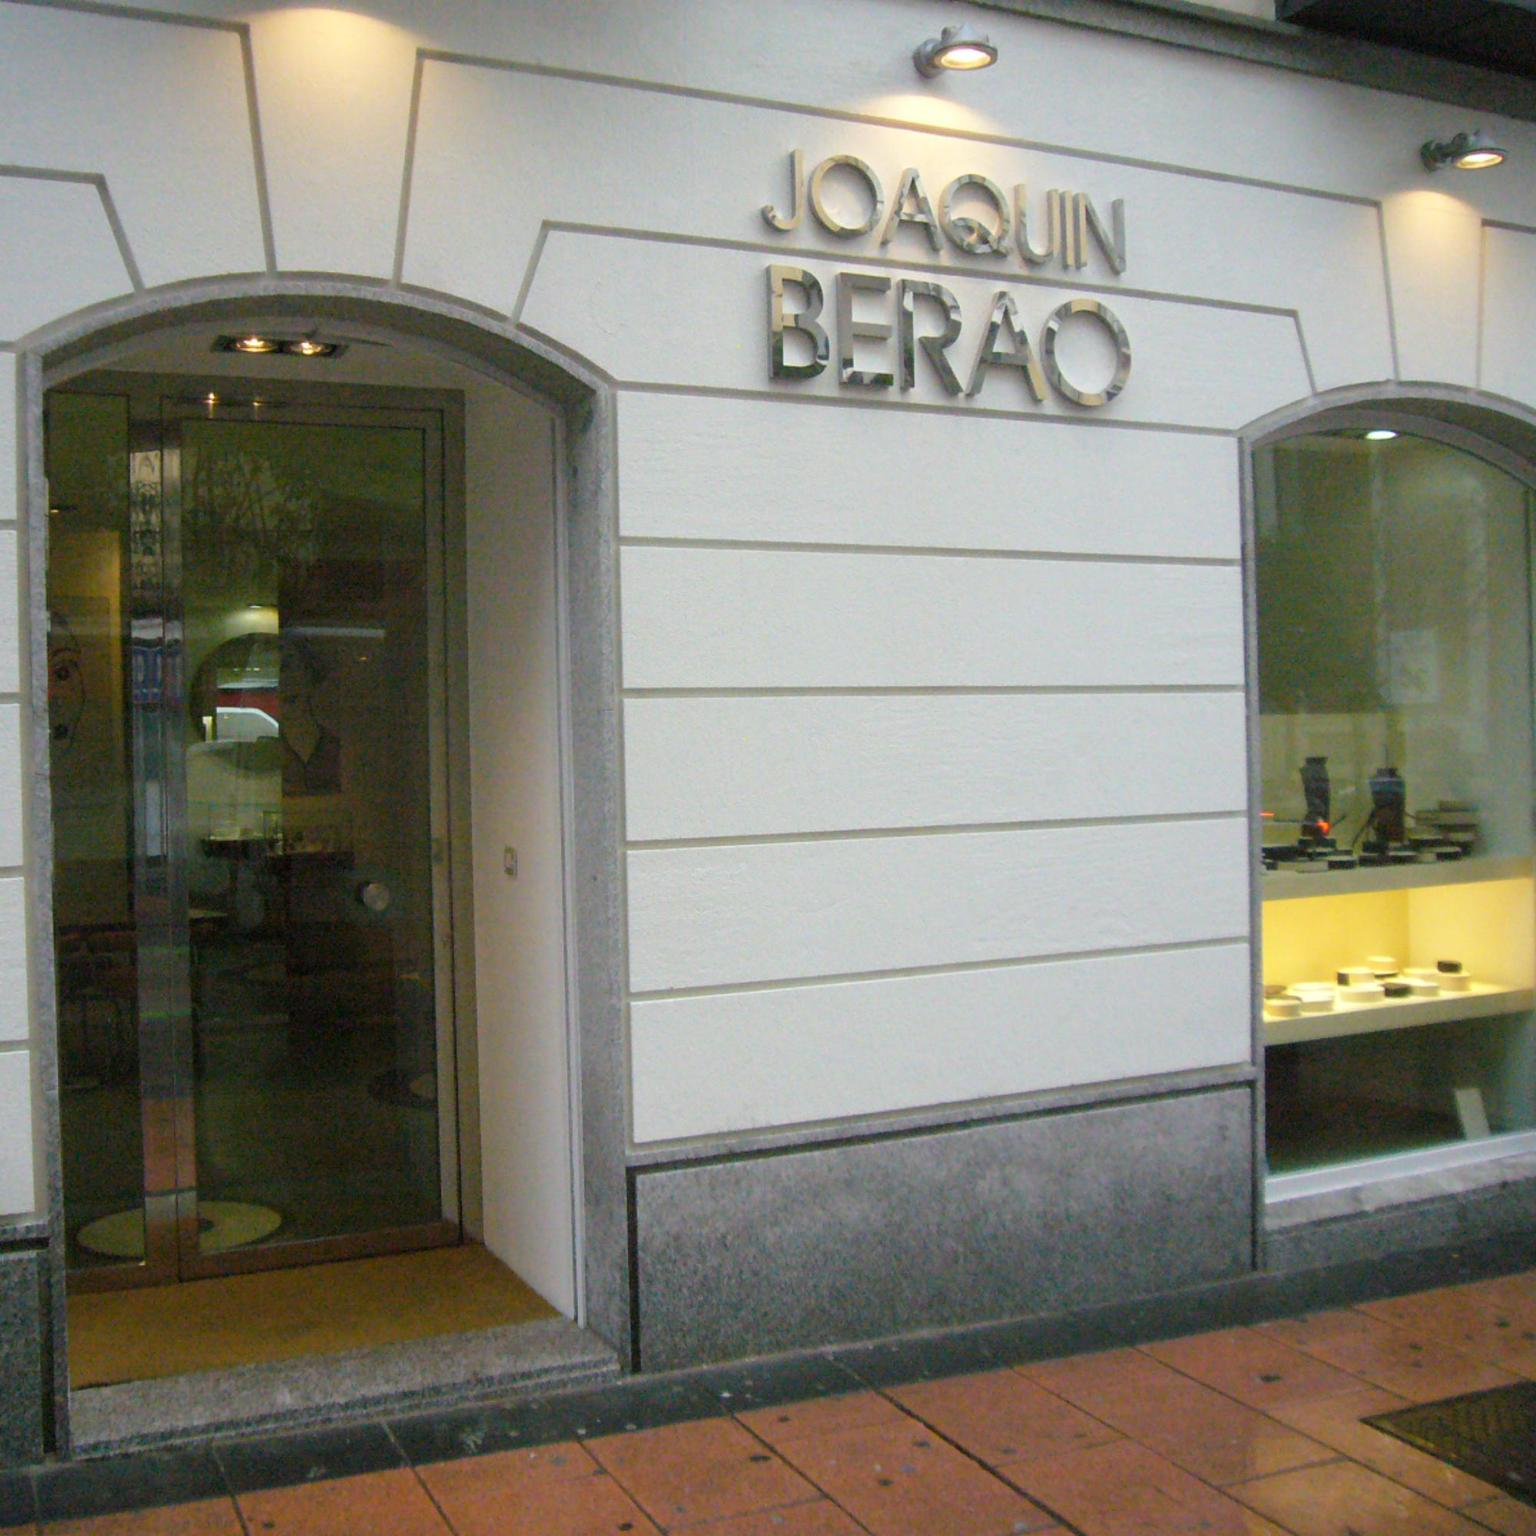 Joaquín Berao boutique facade in Madrid